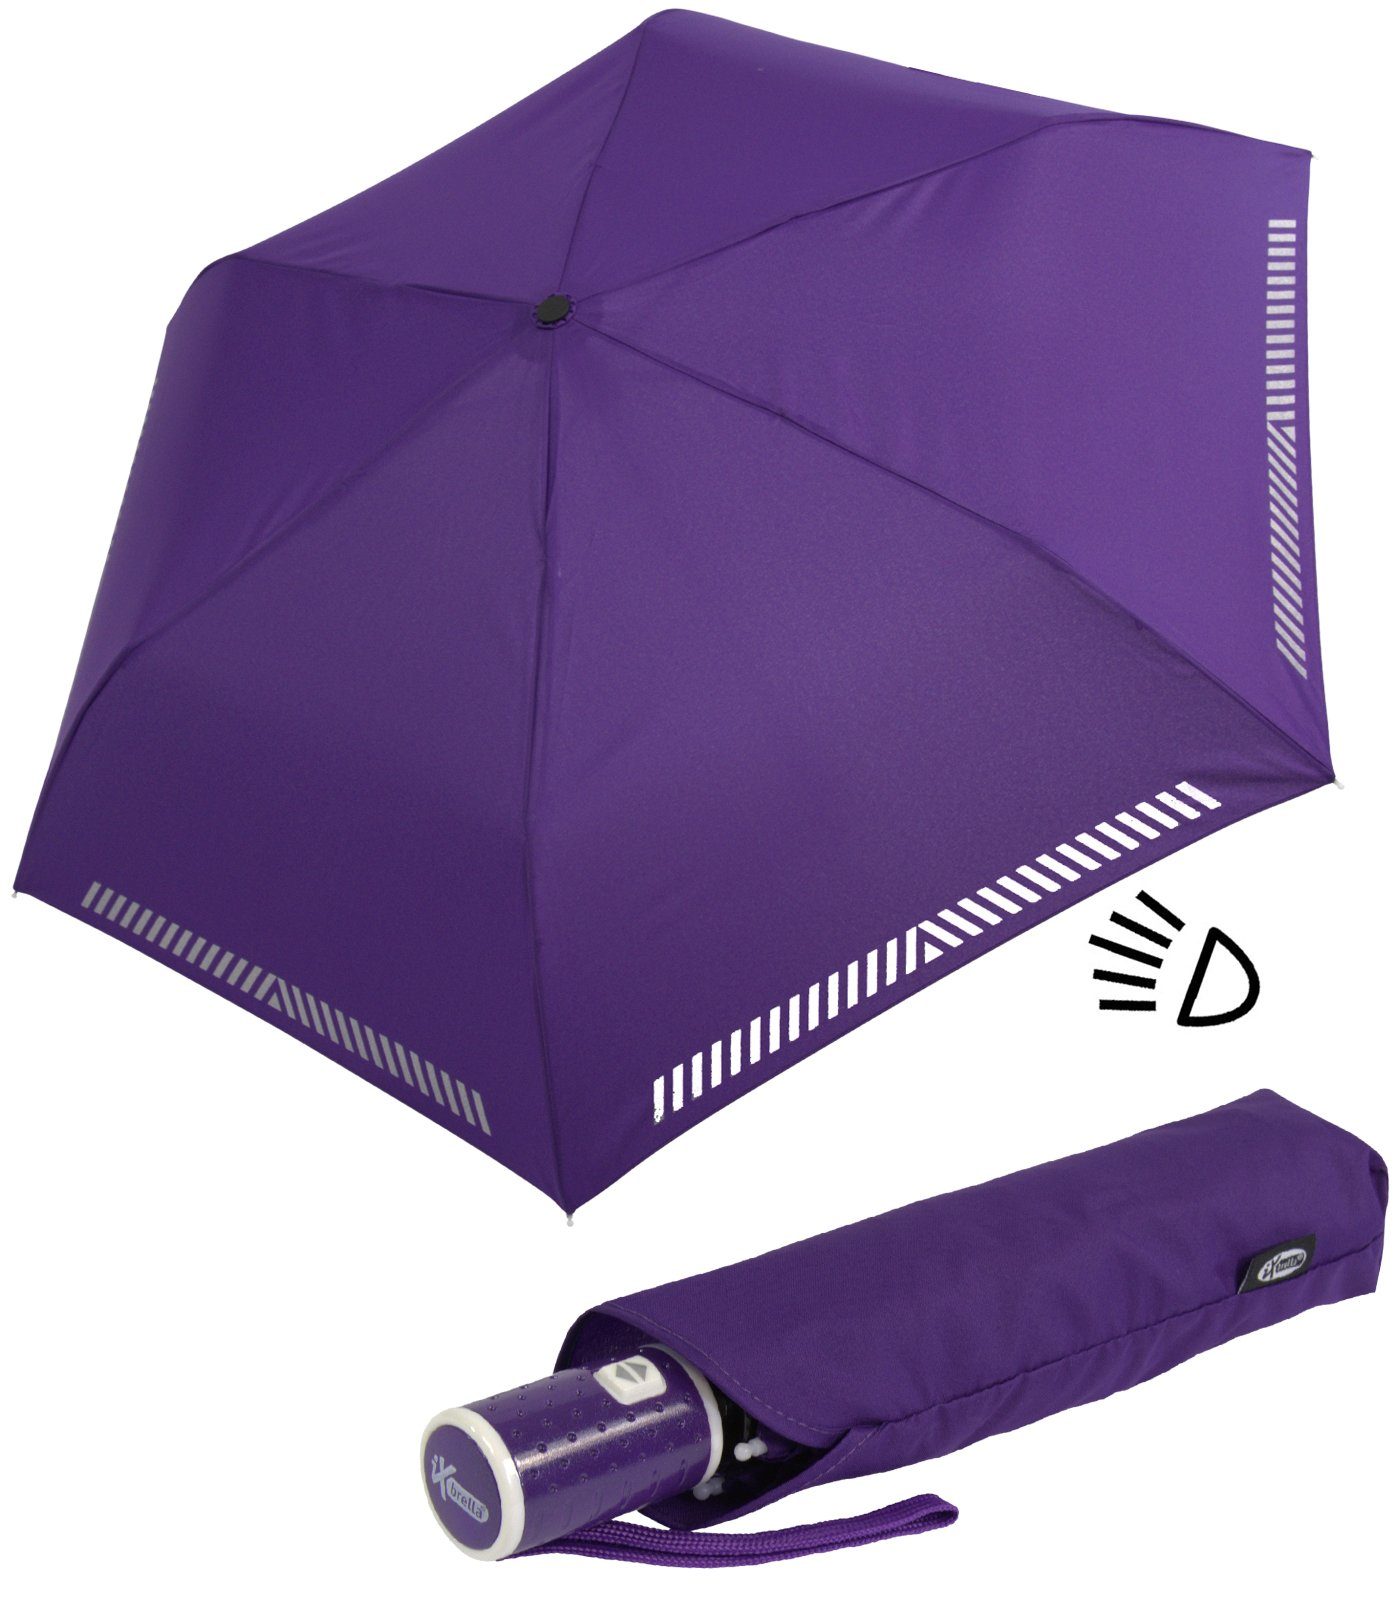 iX-brella Taschenregenschirm Kinderschirm mit Auf-Zu-Automatik, reflektierend, Sicherheit durch Reflex-Streifen - berry